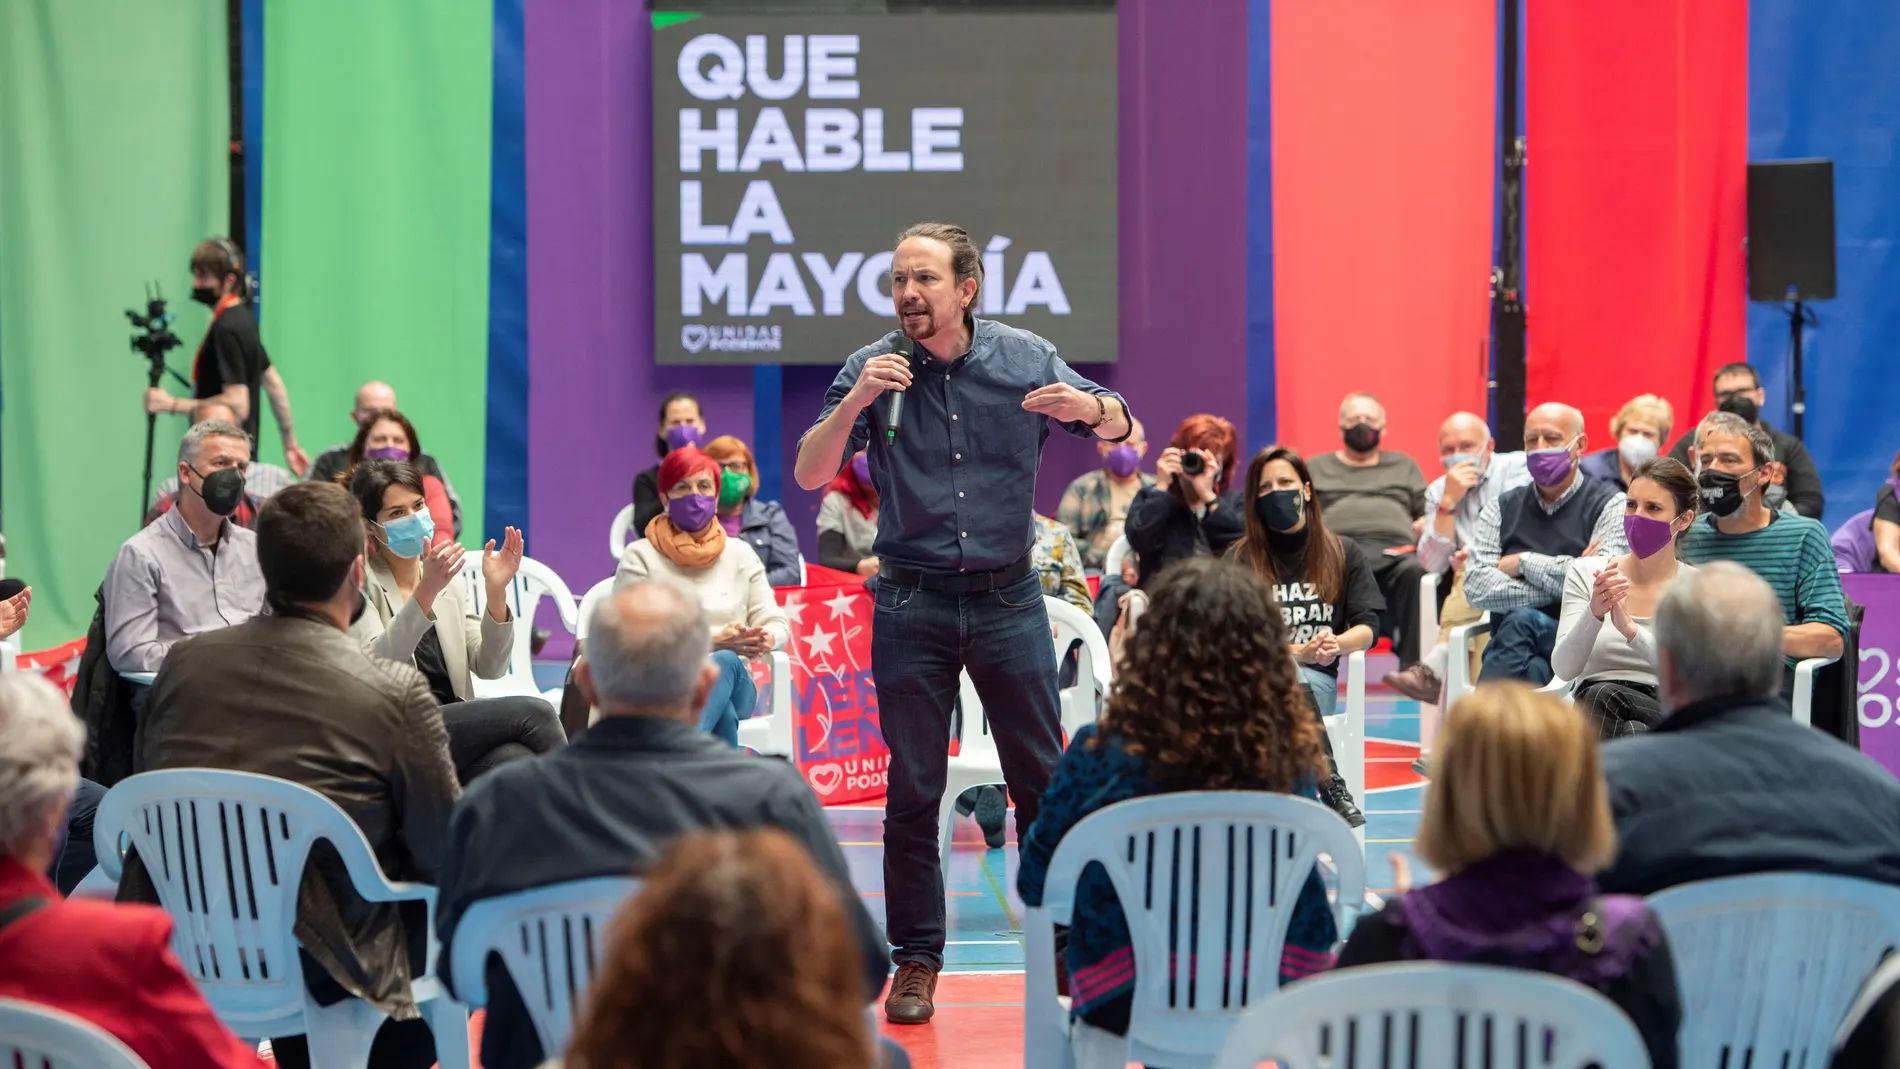 El candidato de Unidas Podemos a la Presidencia de la Comunidad, Pablo Iglesias, interviene durante un acto del partido en el Polideportivo municipal Cerro Buenavista de Getafe, Madrid, este martes